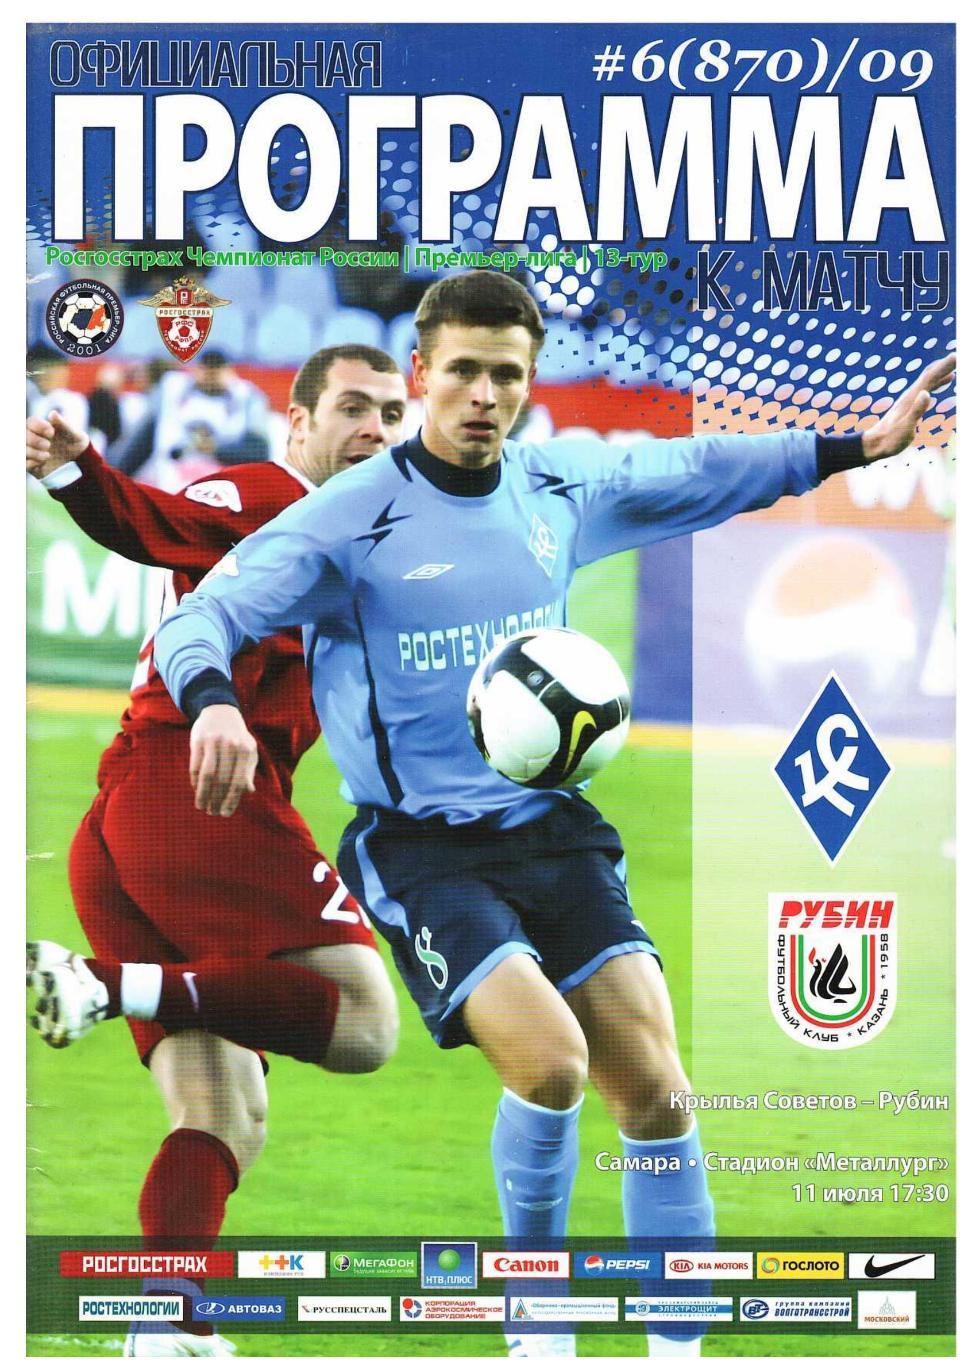 Футбол. 11.07. 2009 г. Крылья Советов (Самара) – Рубин (Казань).